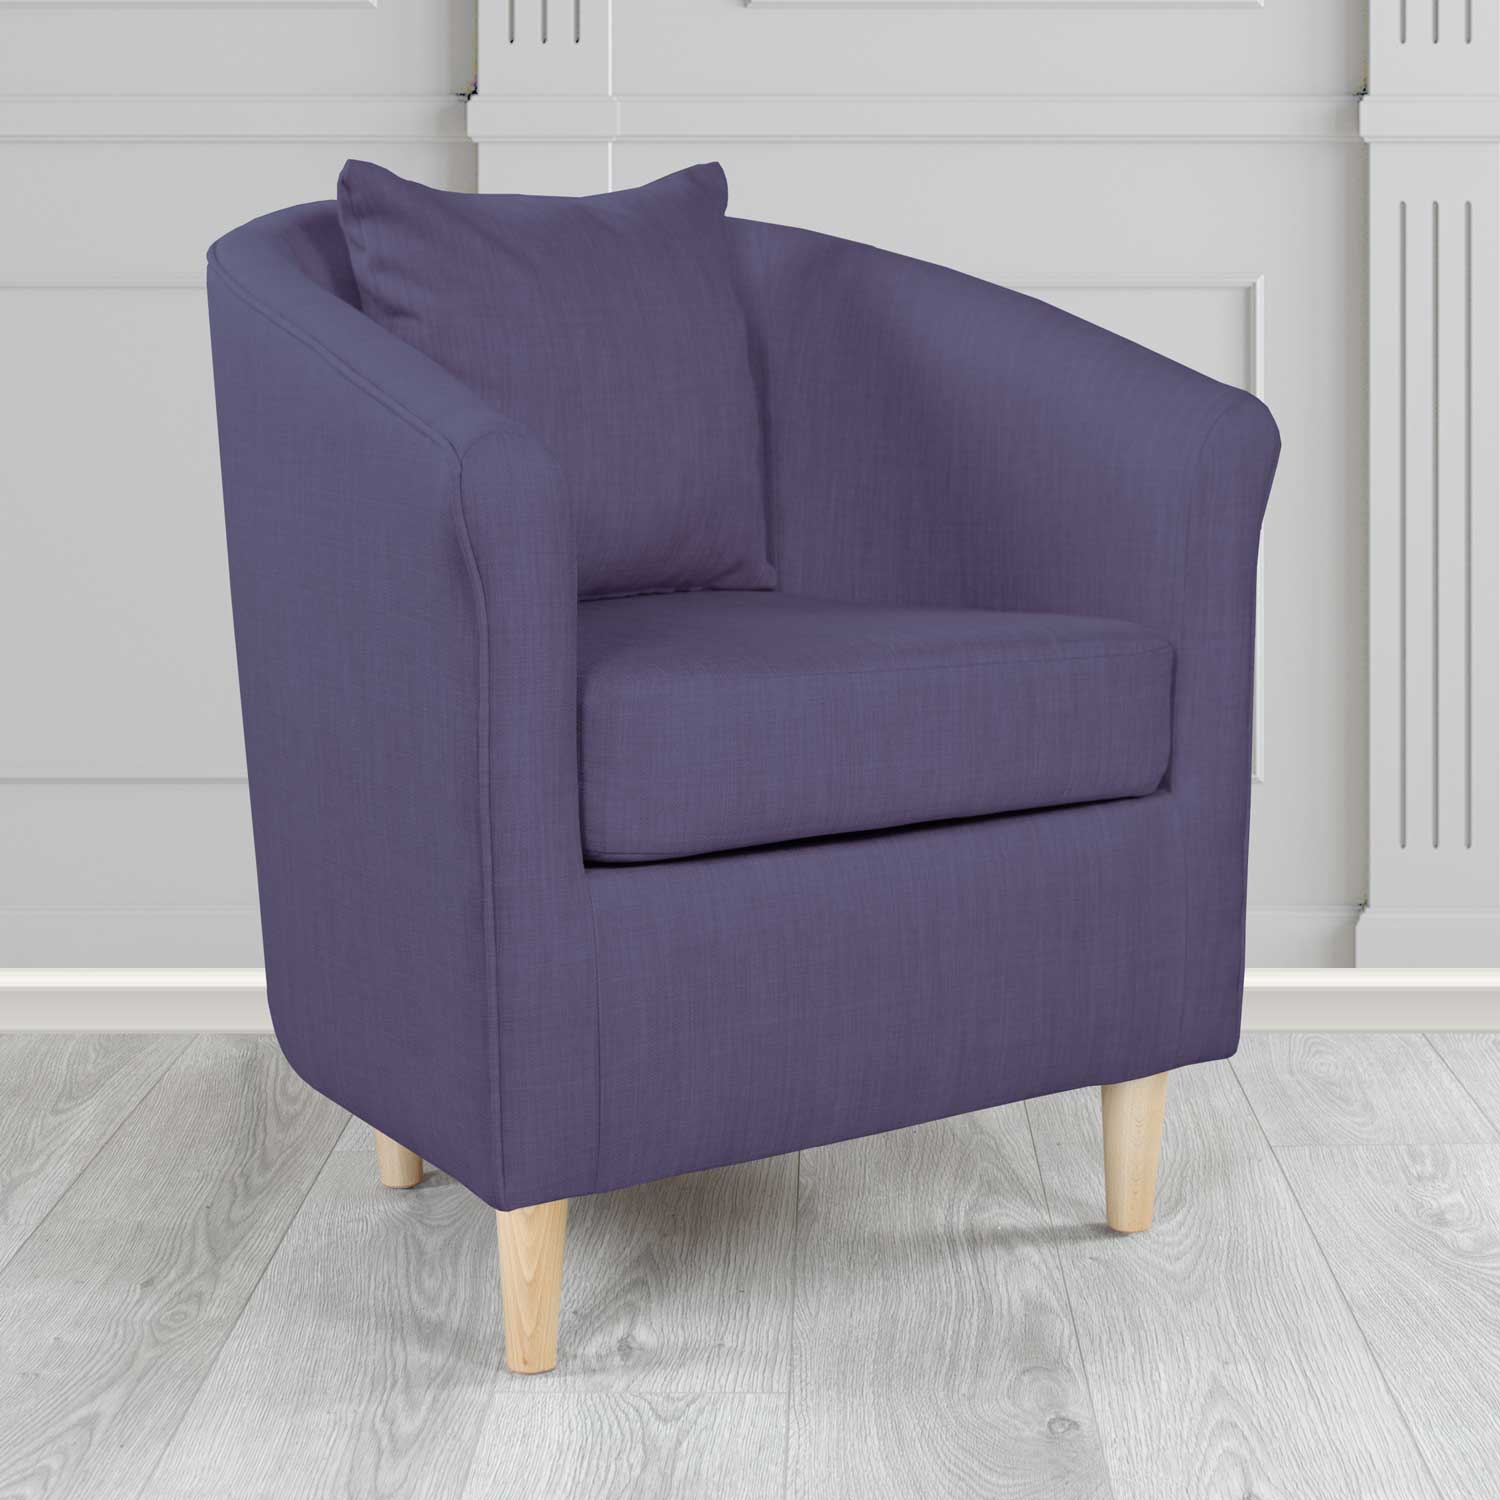 St Tropez Charles Purple Plain Linen Fabric Tub Chair - The Tub Chair Shop